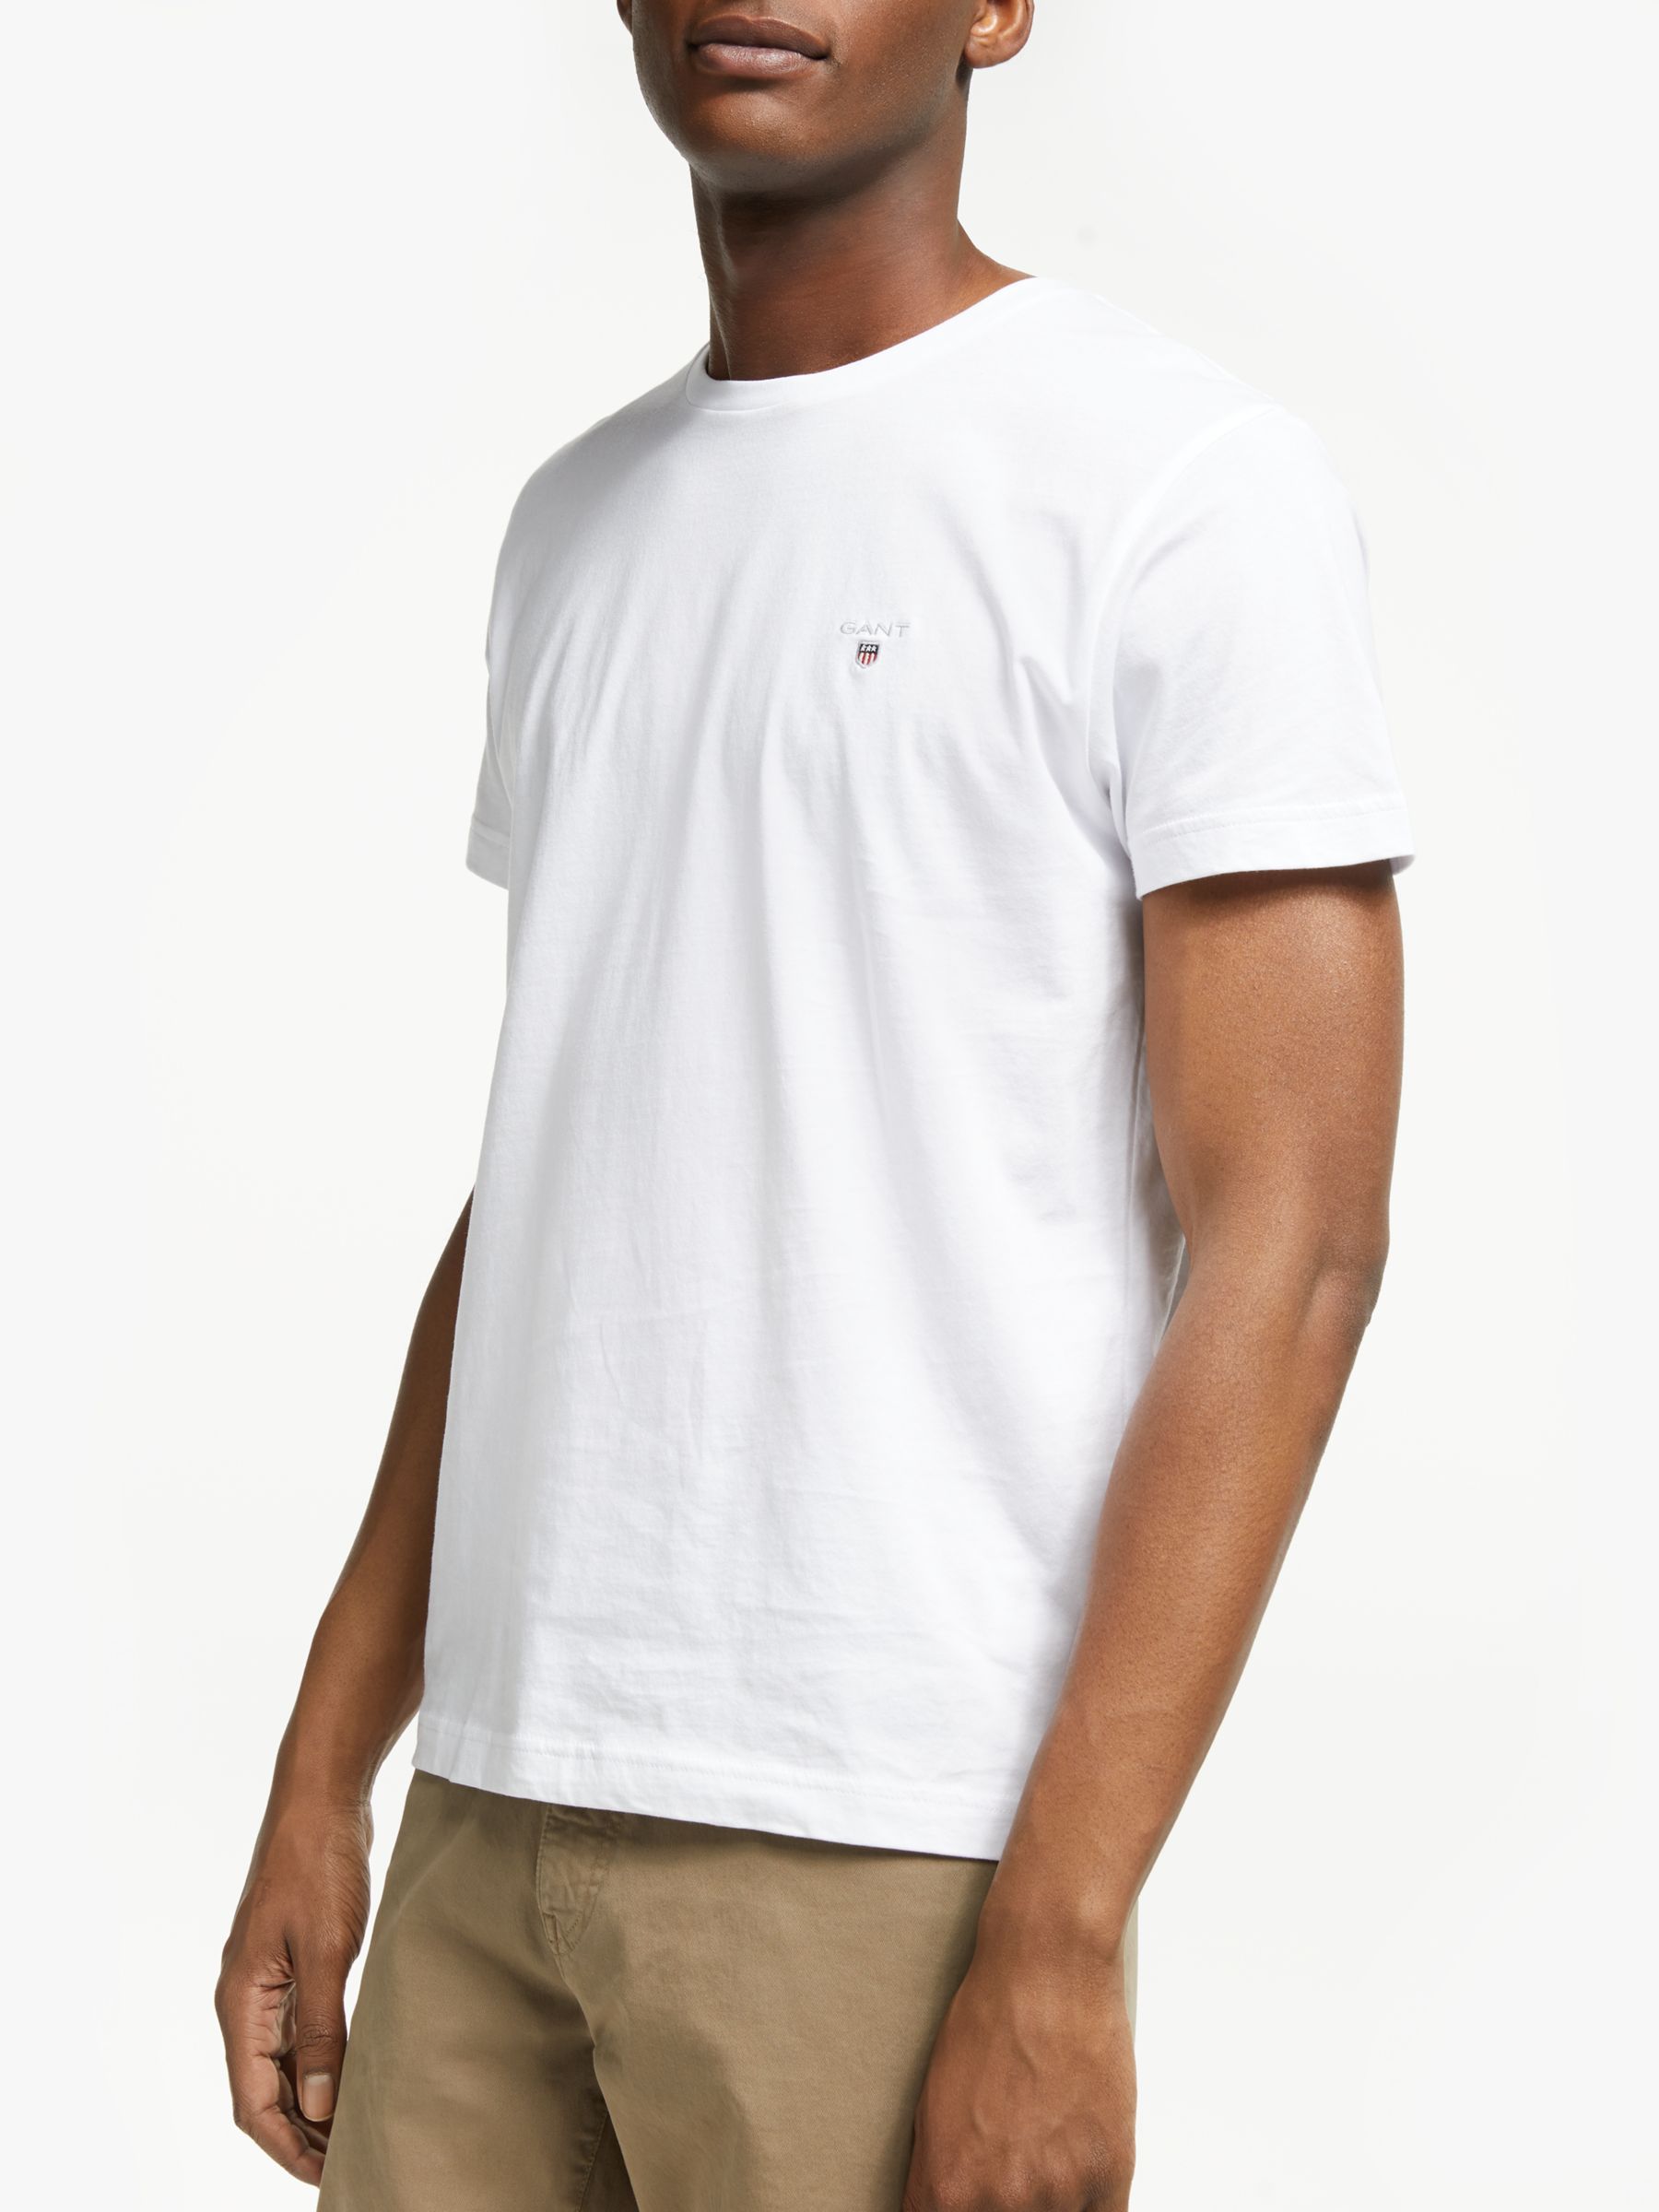 Gant Crew Neck T-Shirt, White, Extra Extra Large